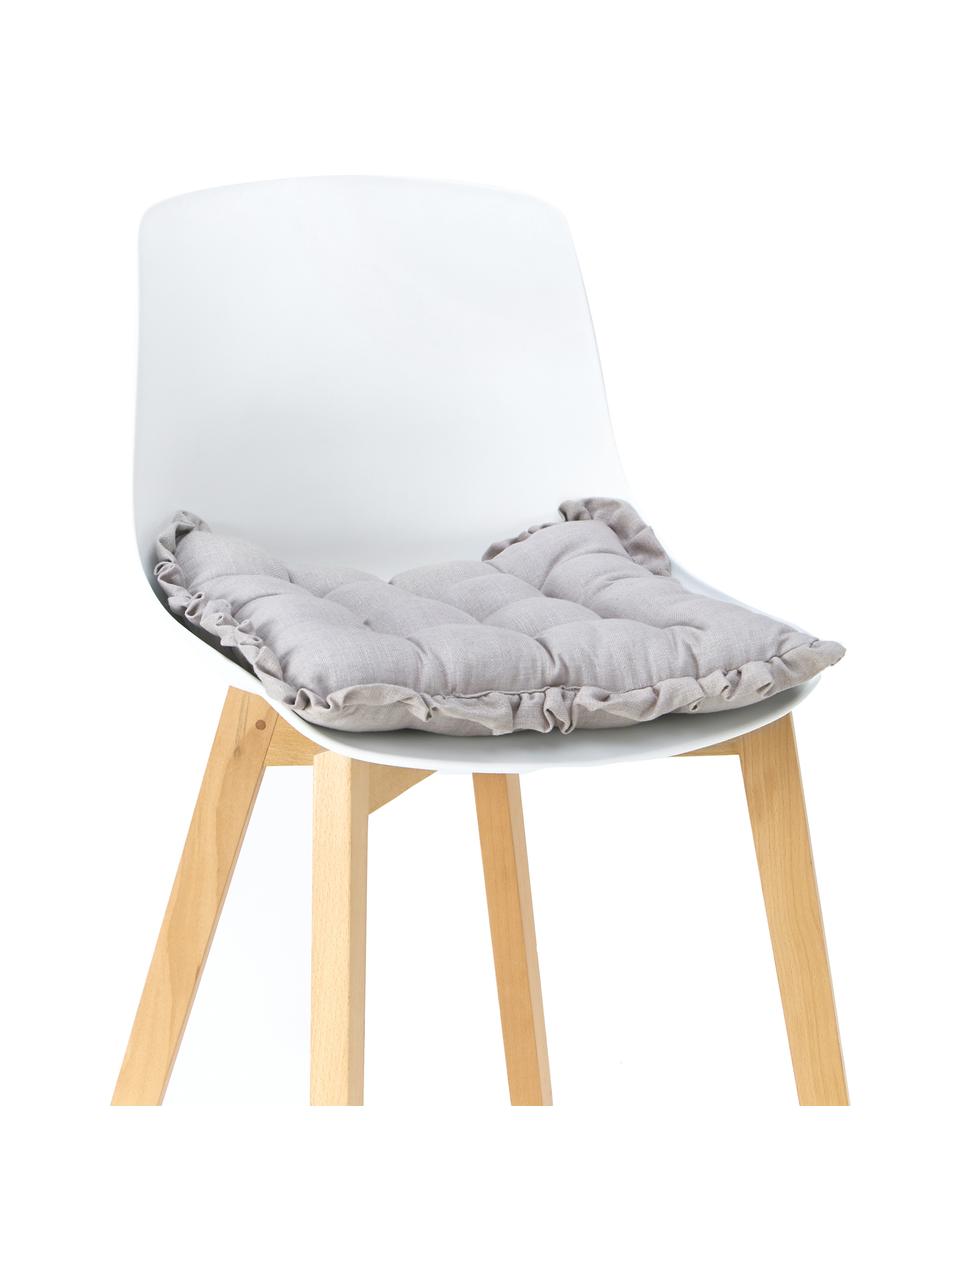 Sitzkissen Camille mit Rüschen, Bezug: 60% Polyester, 25% Baumwo, Grau, B 40 x L 40 cm